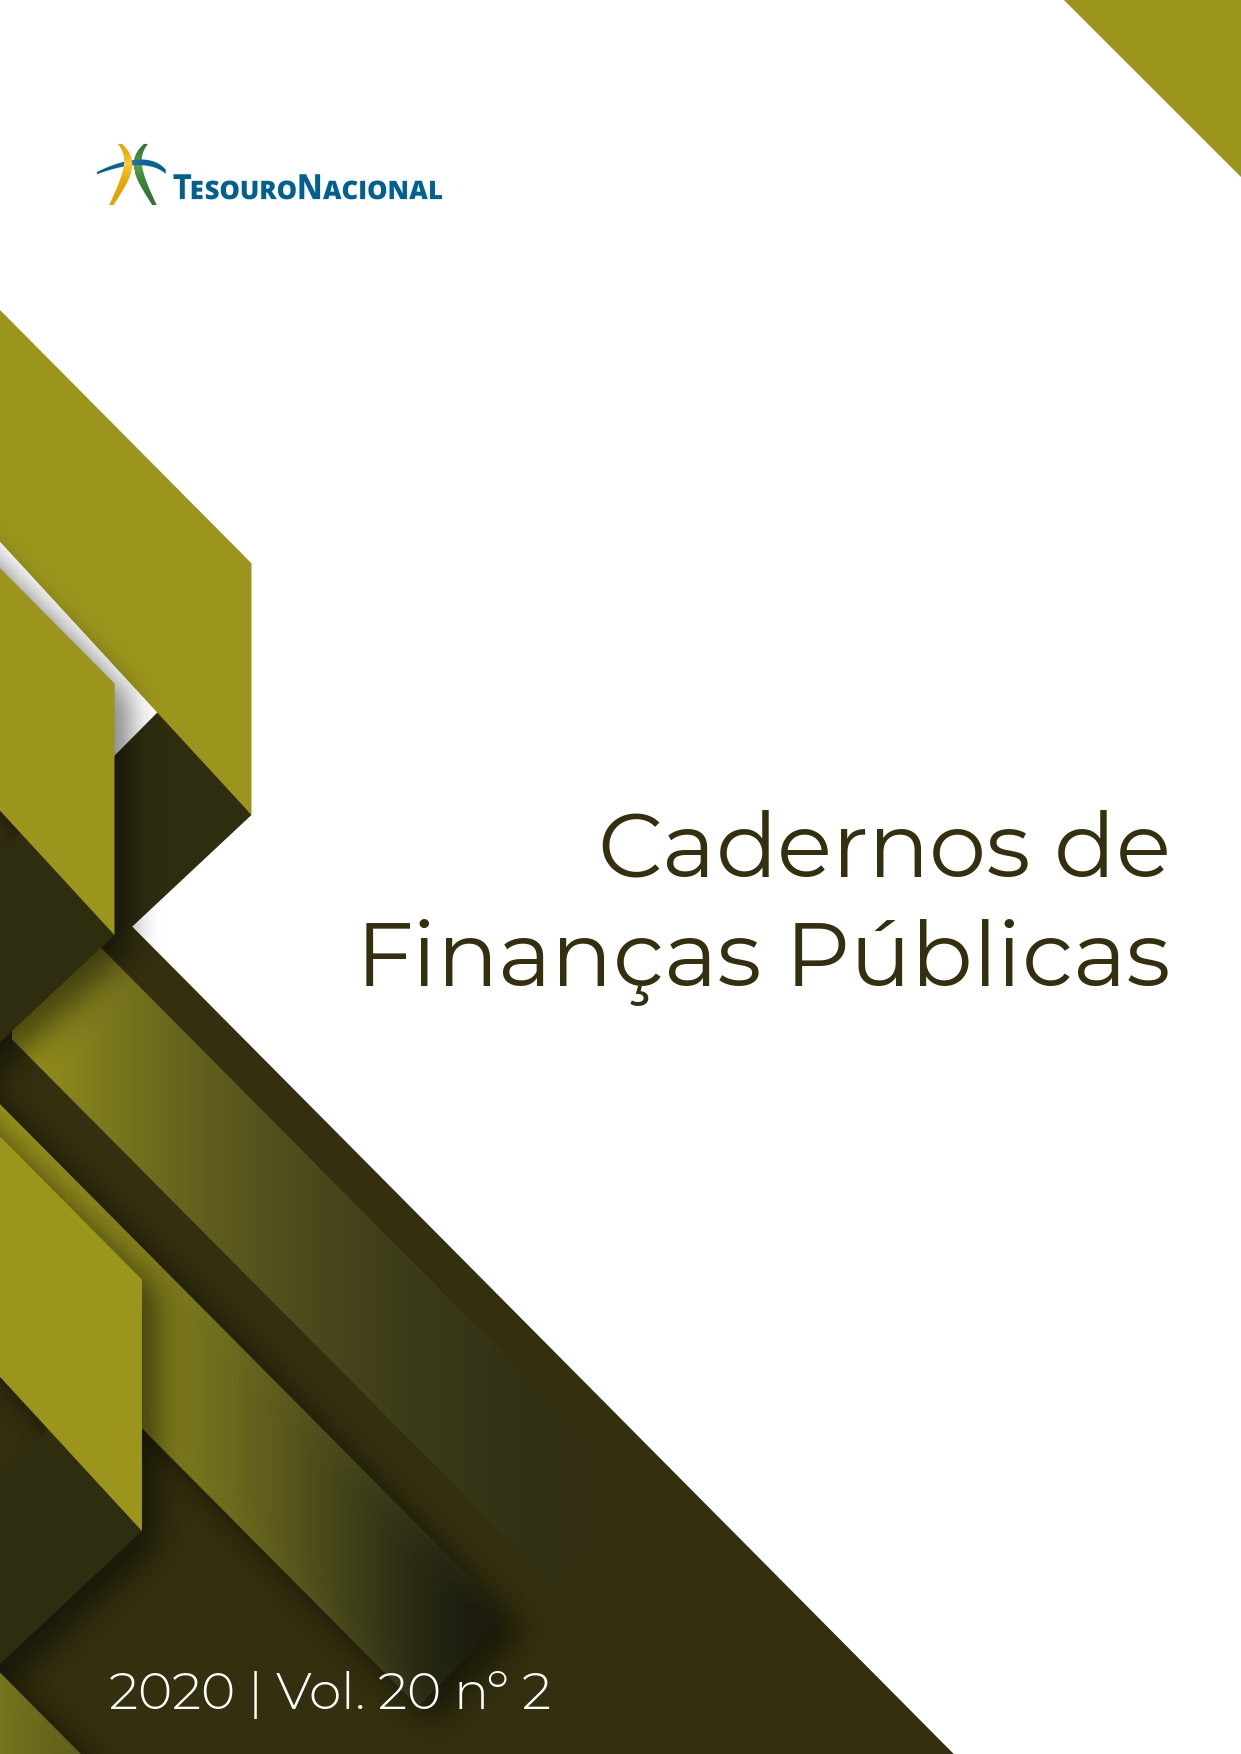 					Visualizar v. 20 n. 02 (2020): CADERNOS DE FINANÇAS PÚBLICAS
				